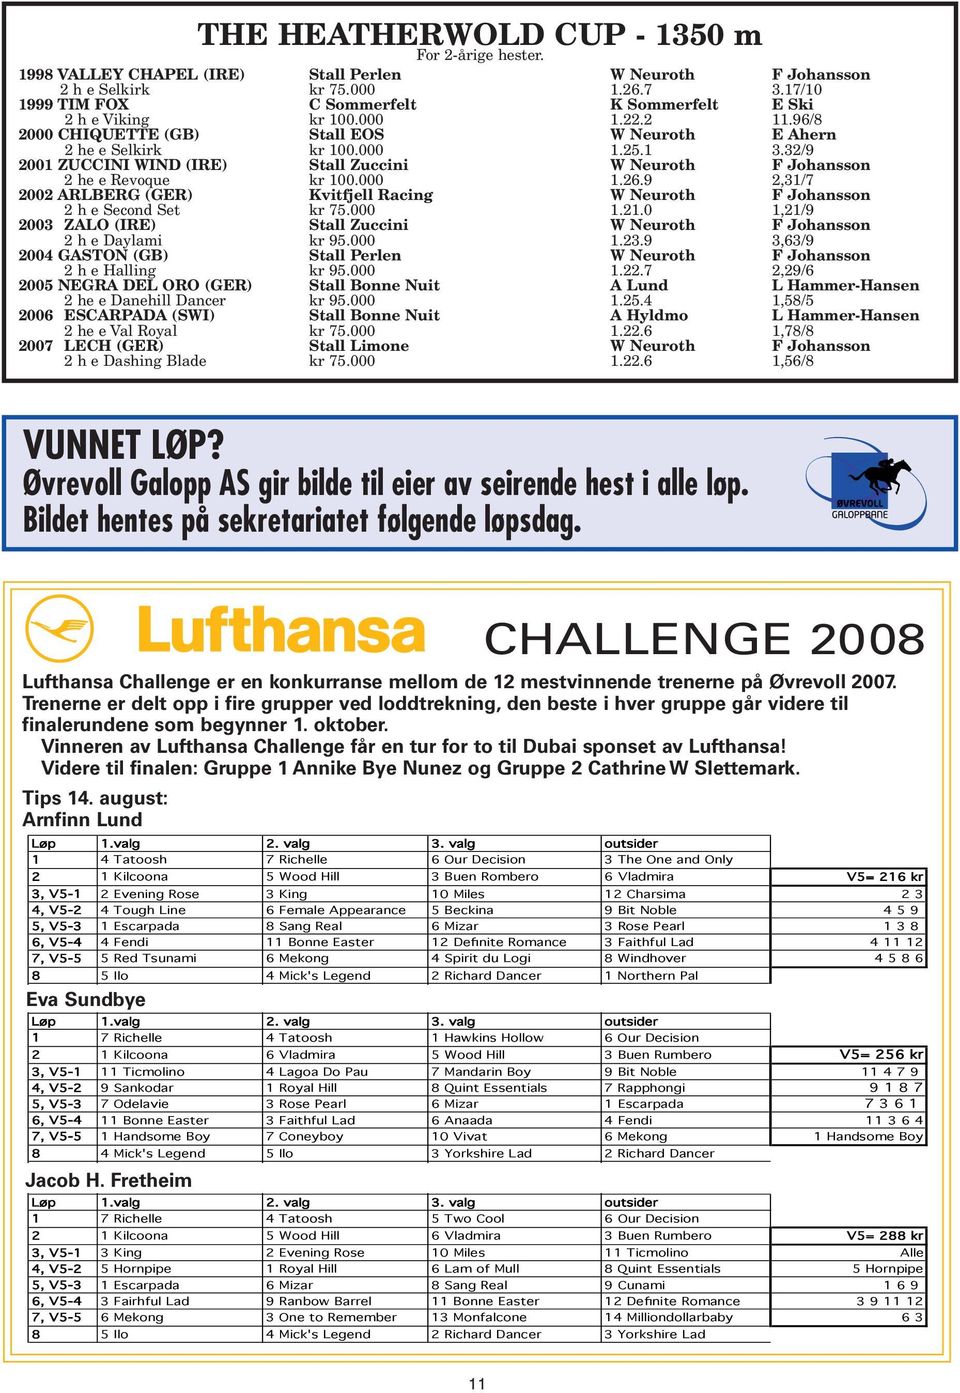 32/9 2001 ZUCCINI WIND (IRE) Stall Zuccini W Neuroth F Johansson 2 he e Revoque kr 100.000 1.26.9 2,31/7 2002 ARLBERG (GER) Kvitfjell Racing W Neuroth F Johansson 2 h e Second Set kr 75.000 1.21.